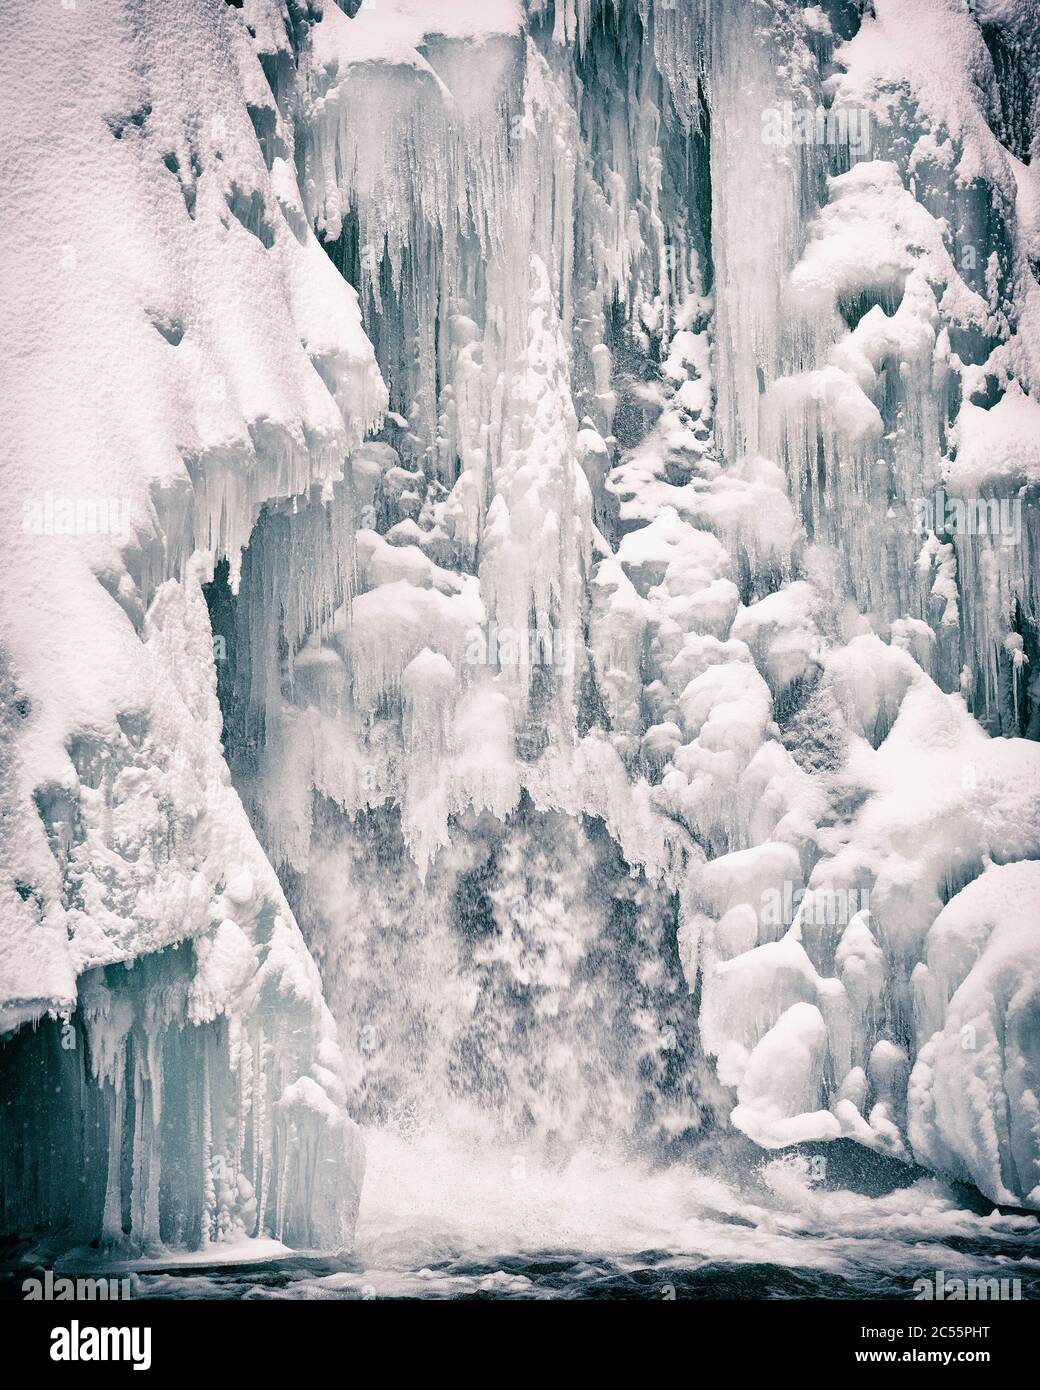 Frozen Waterfall in Winter Stock Photo